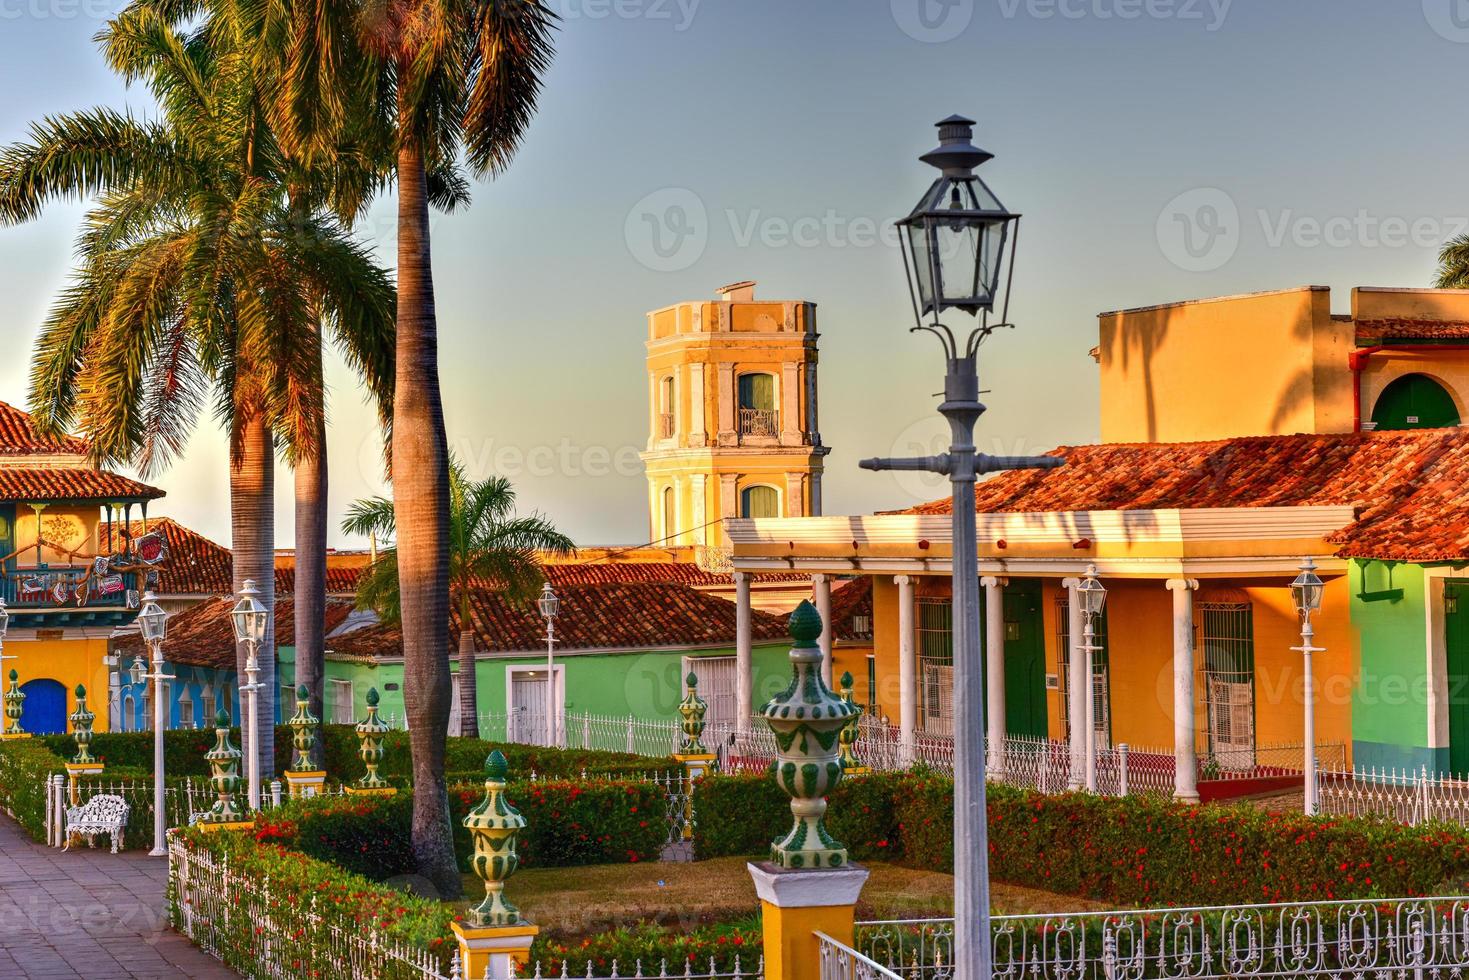 plaza mayor en el centro de trinidad, cuba, un sitio del patrimonio mundial de la unesco. foto